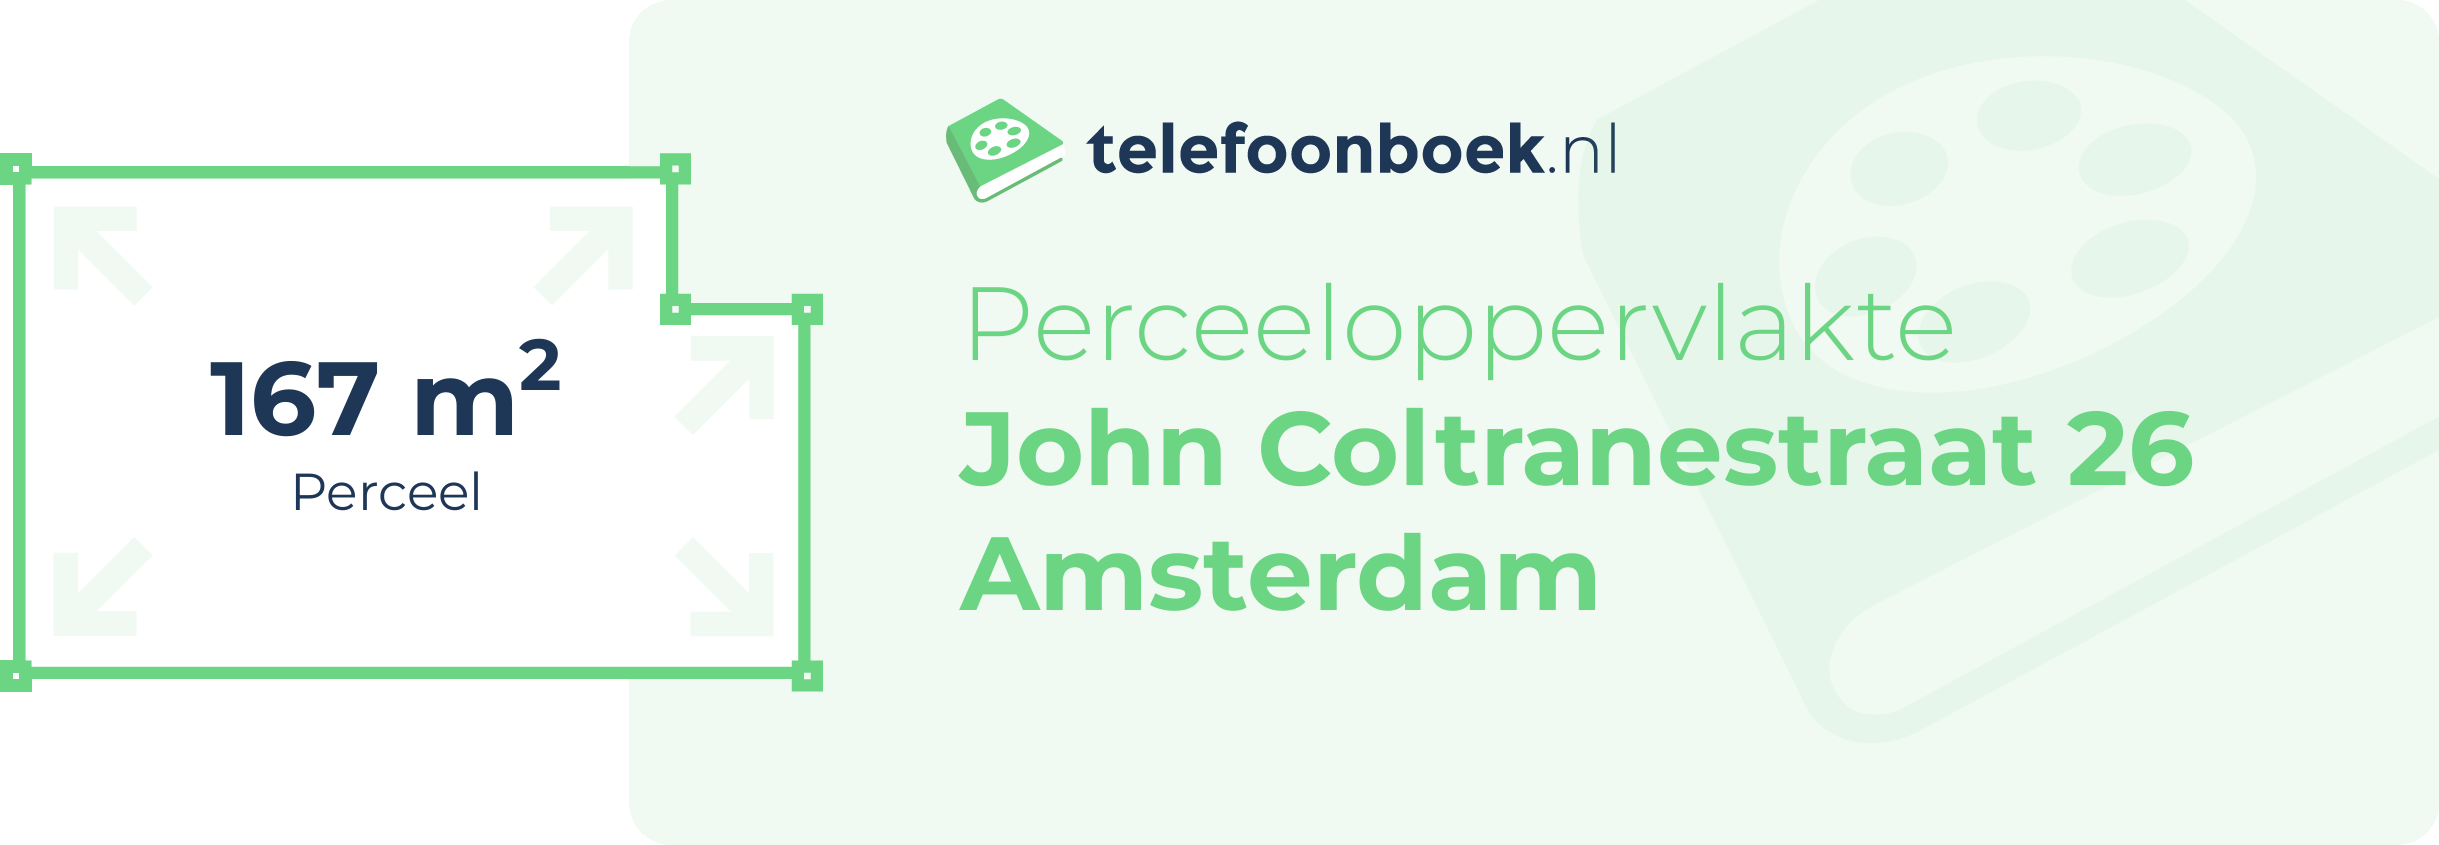 Perceeloppervlakte John Coltranestraat 26 Amsterdam